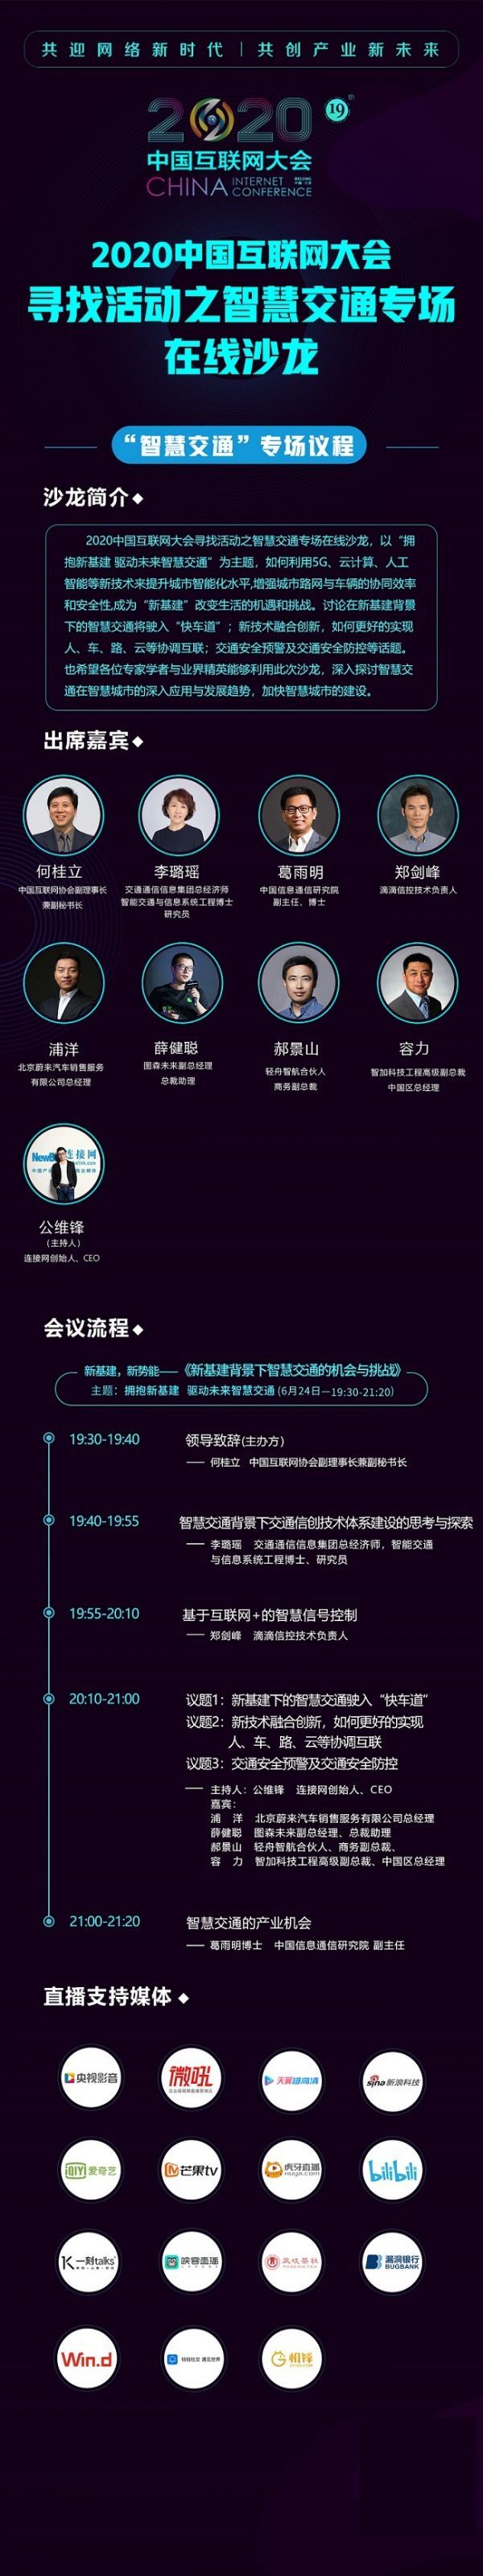 2020中国互联网大会.jpg